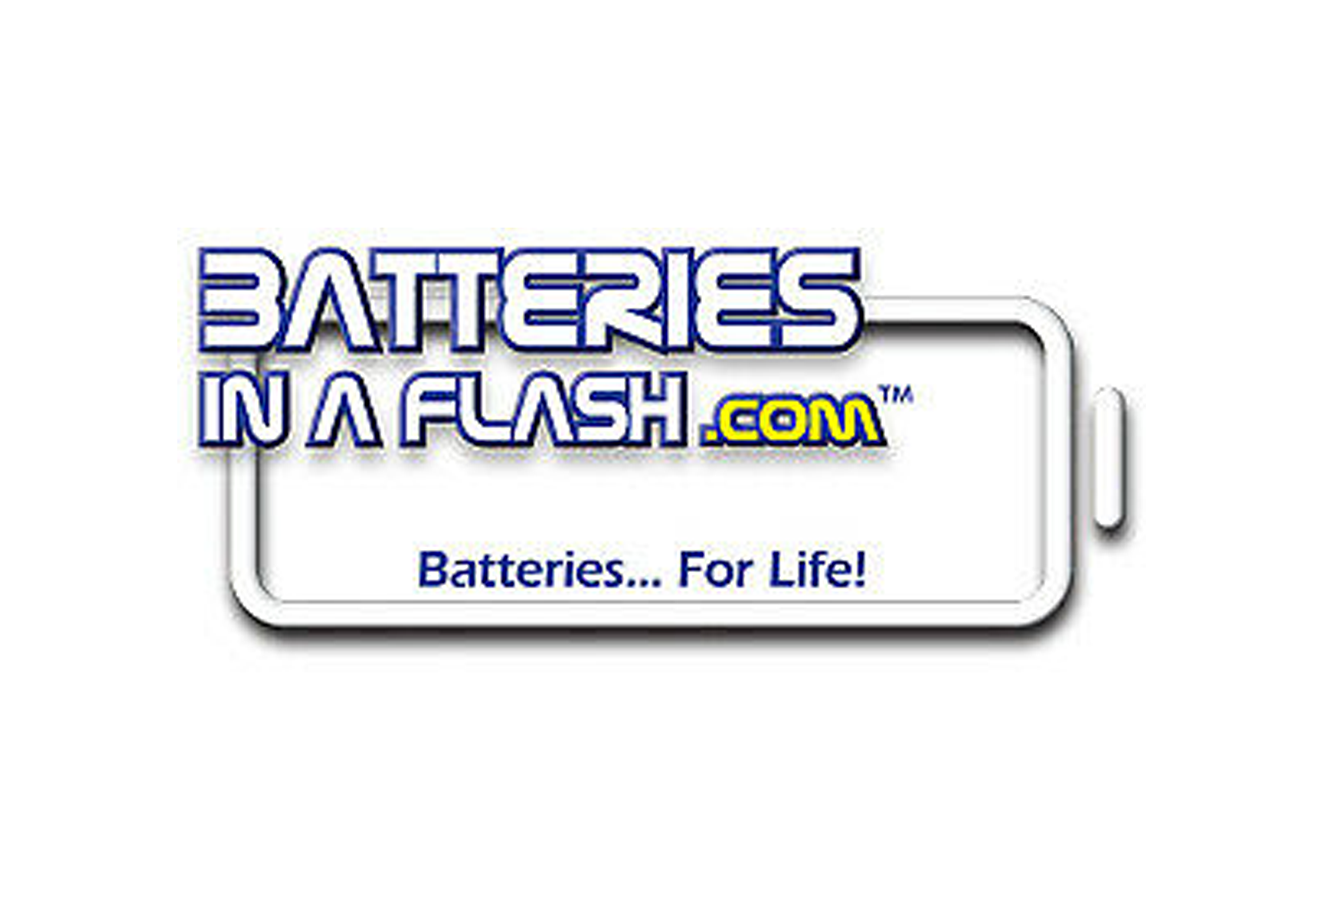 Batteries In A Flash.com, Inc.